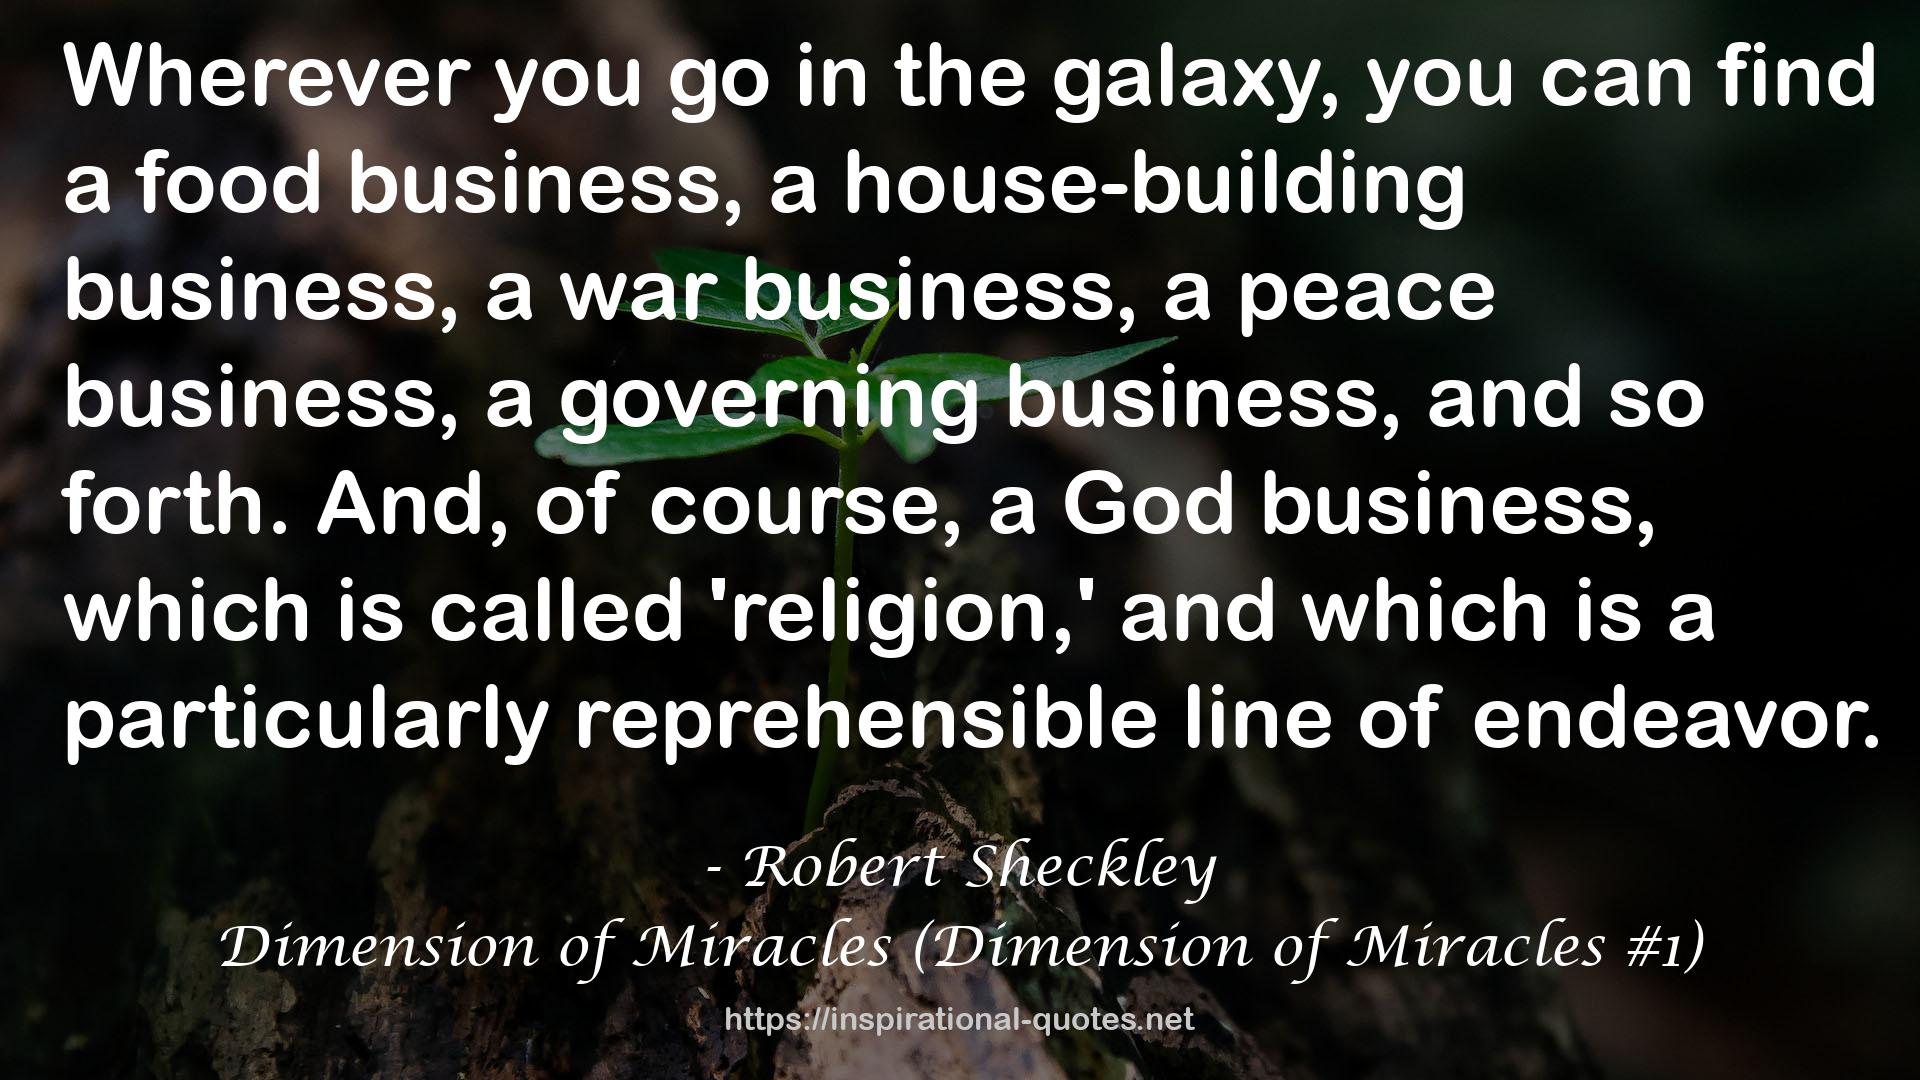 Dimension of Miracles (Dimension of Miracles #1) QUOTES